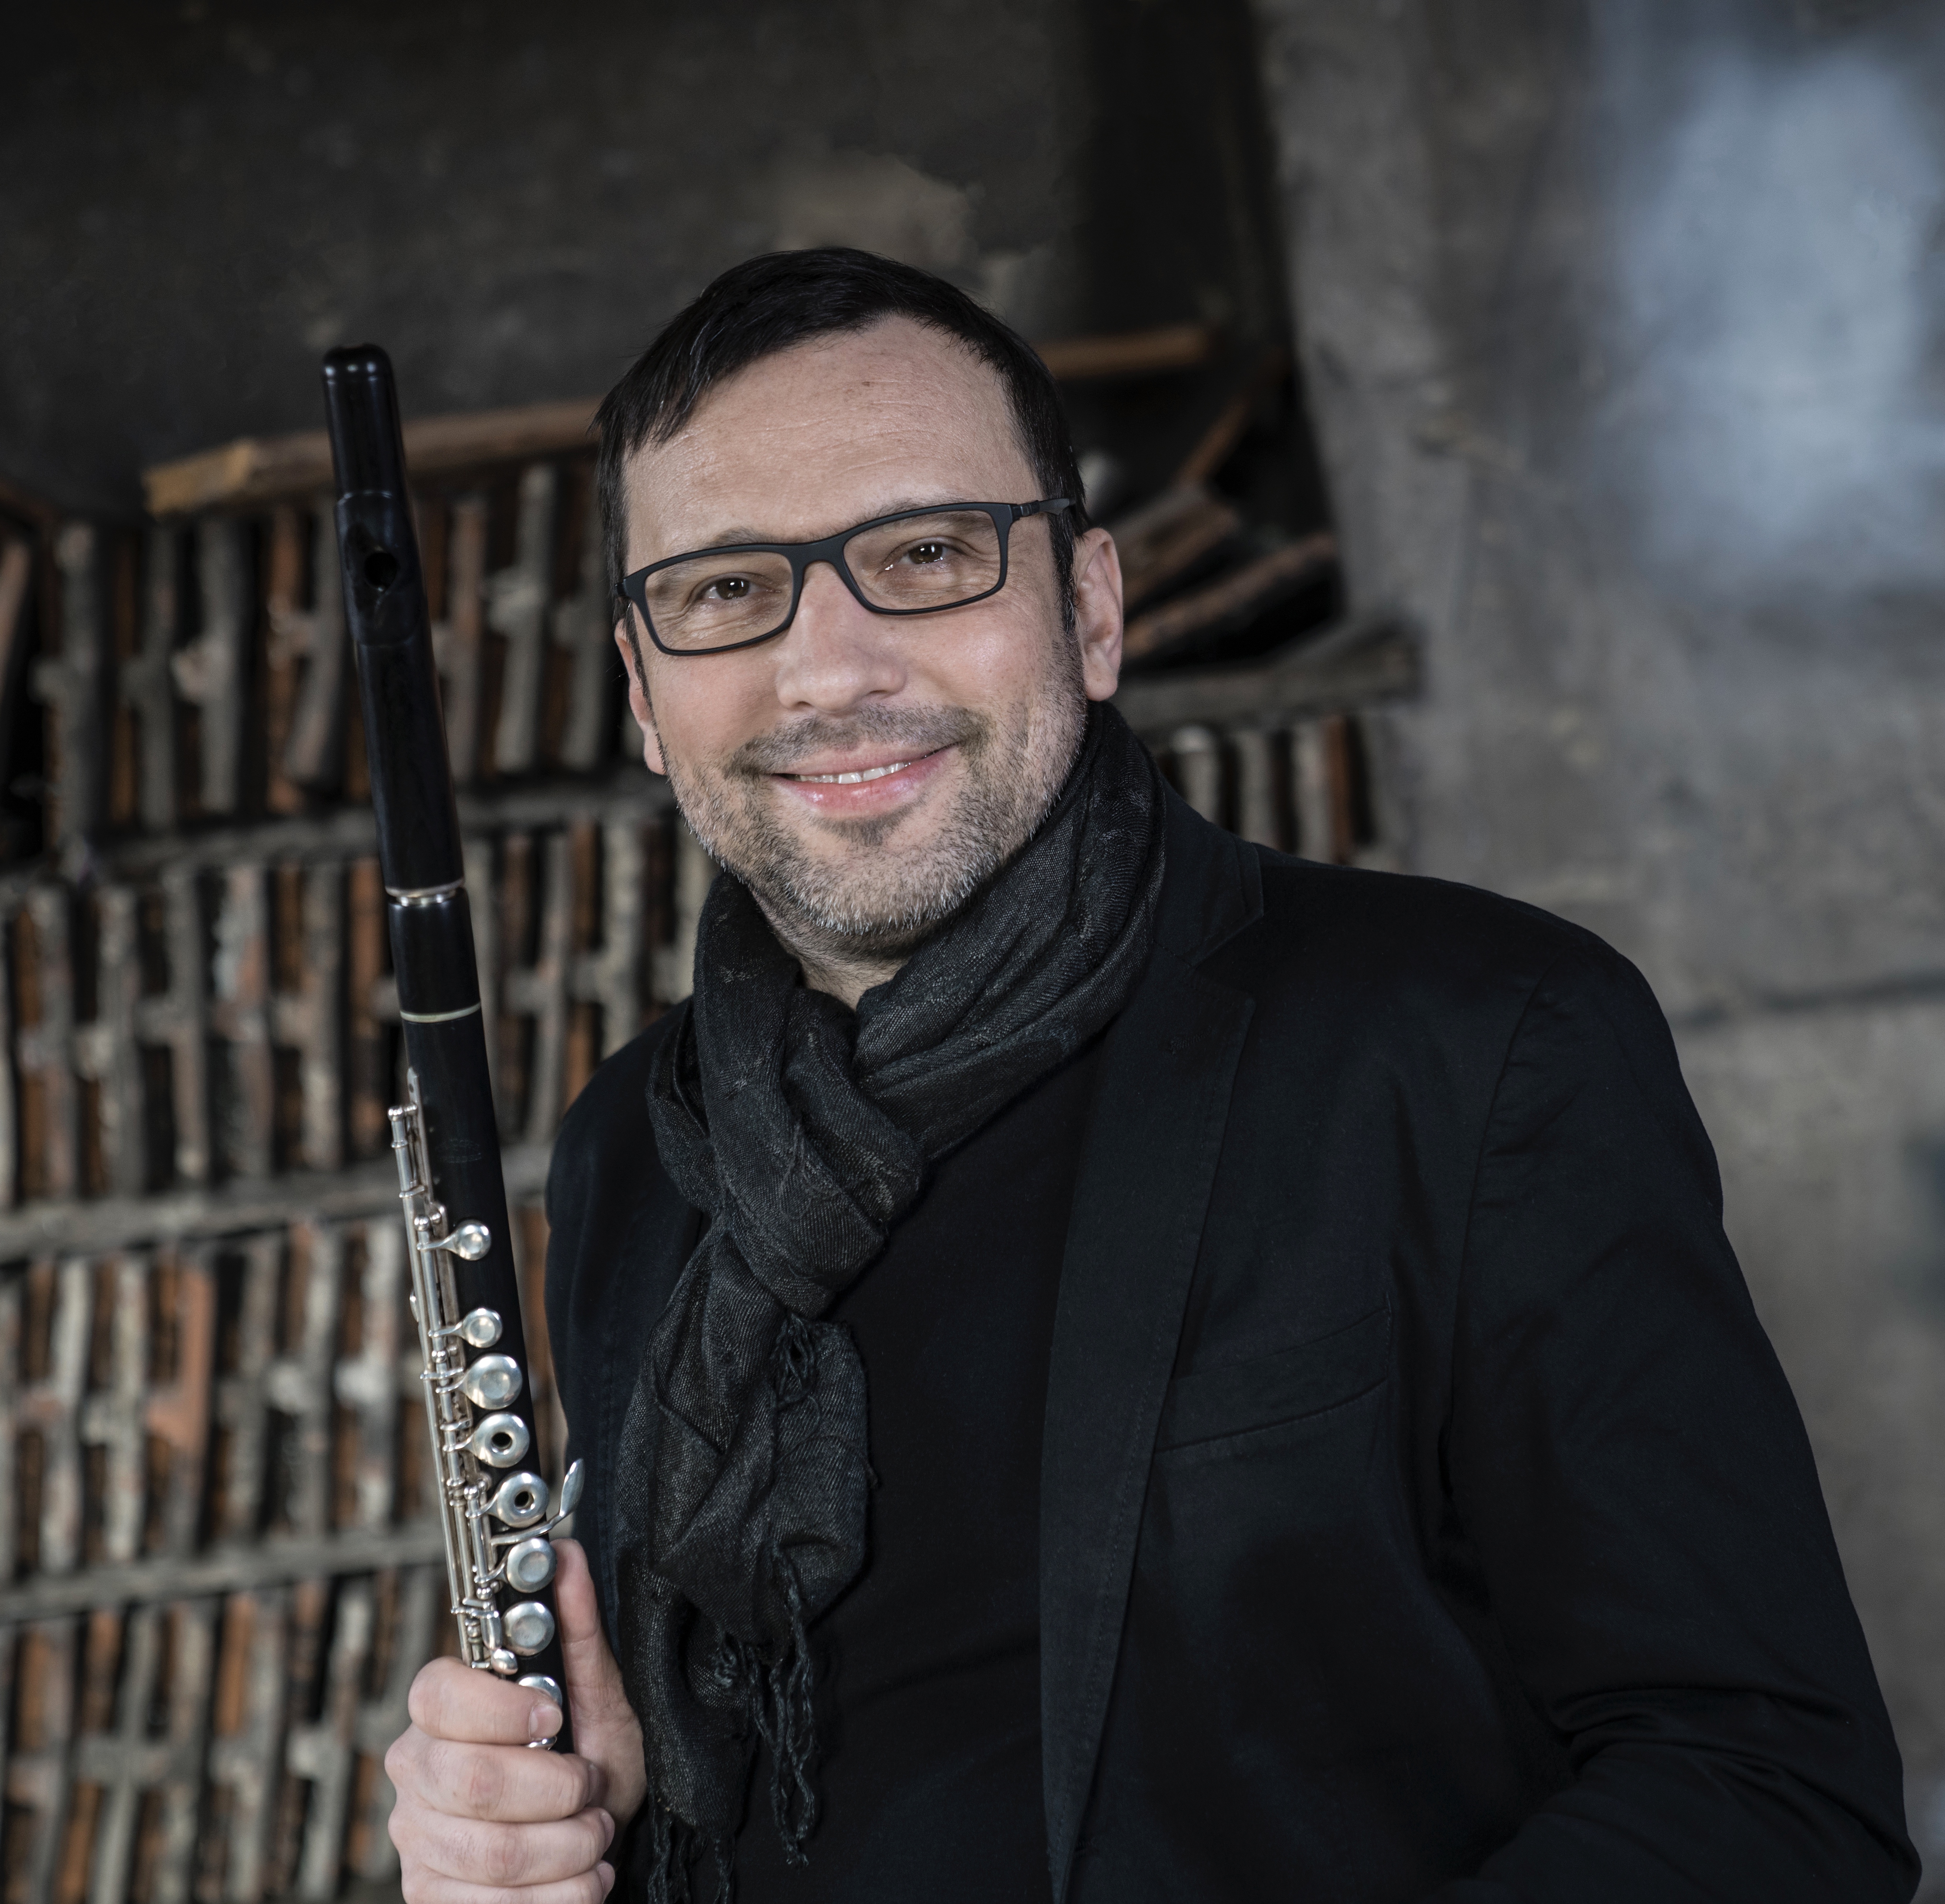 Querflötenunterricht Wien - Querflöte lernen in Wien - für erwachsene - flute lessons - Vienna Flute Studio - Mate Palhegyi